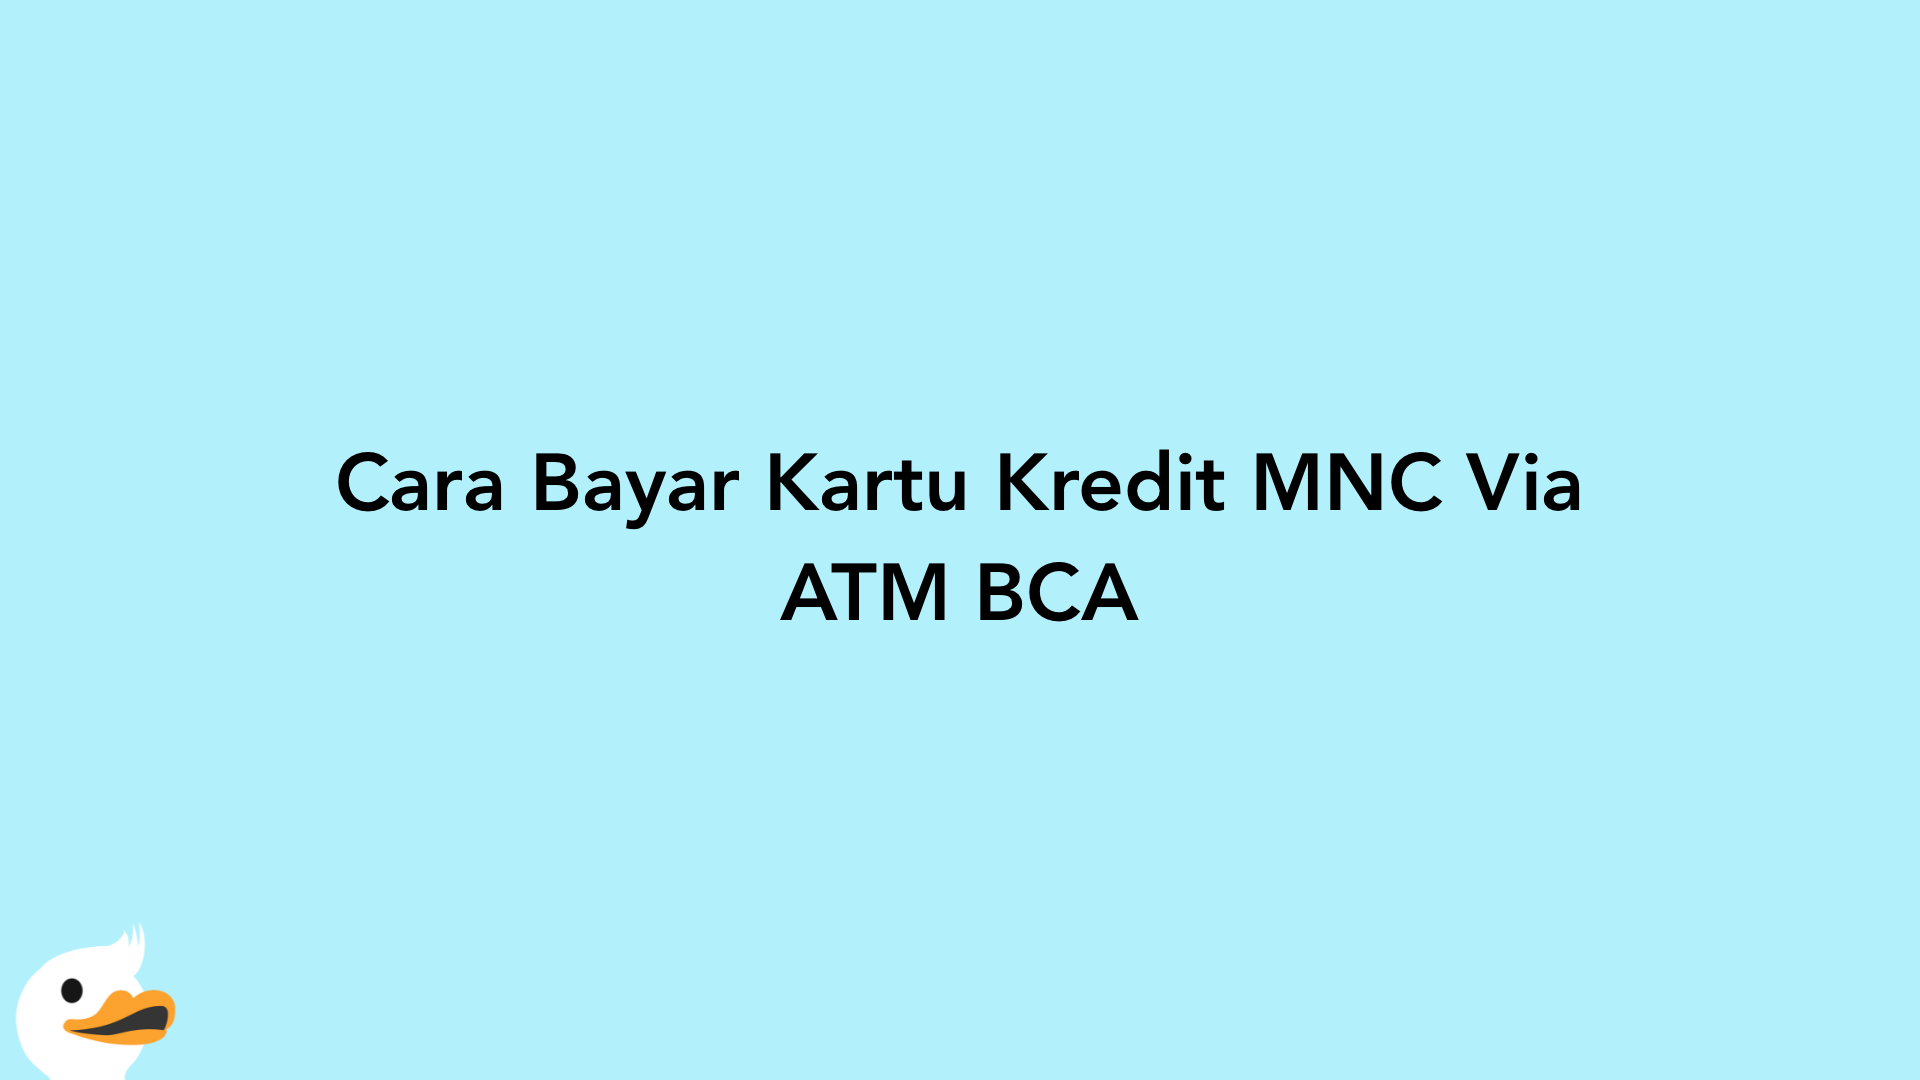 Cara Bayar Kartu Kredit MNC Via ATM BCA